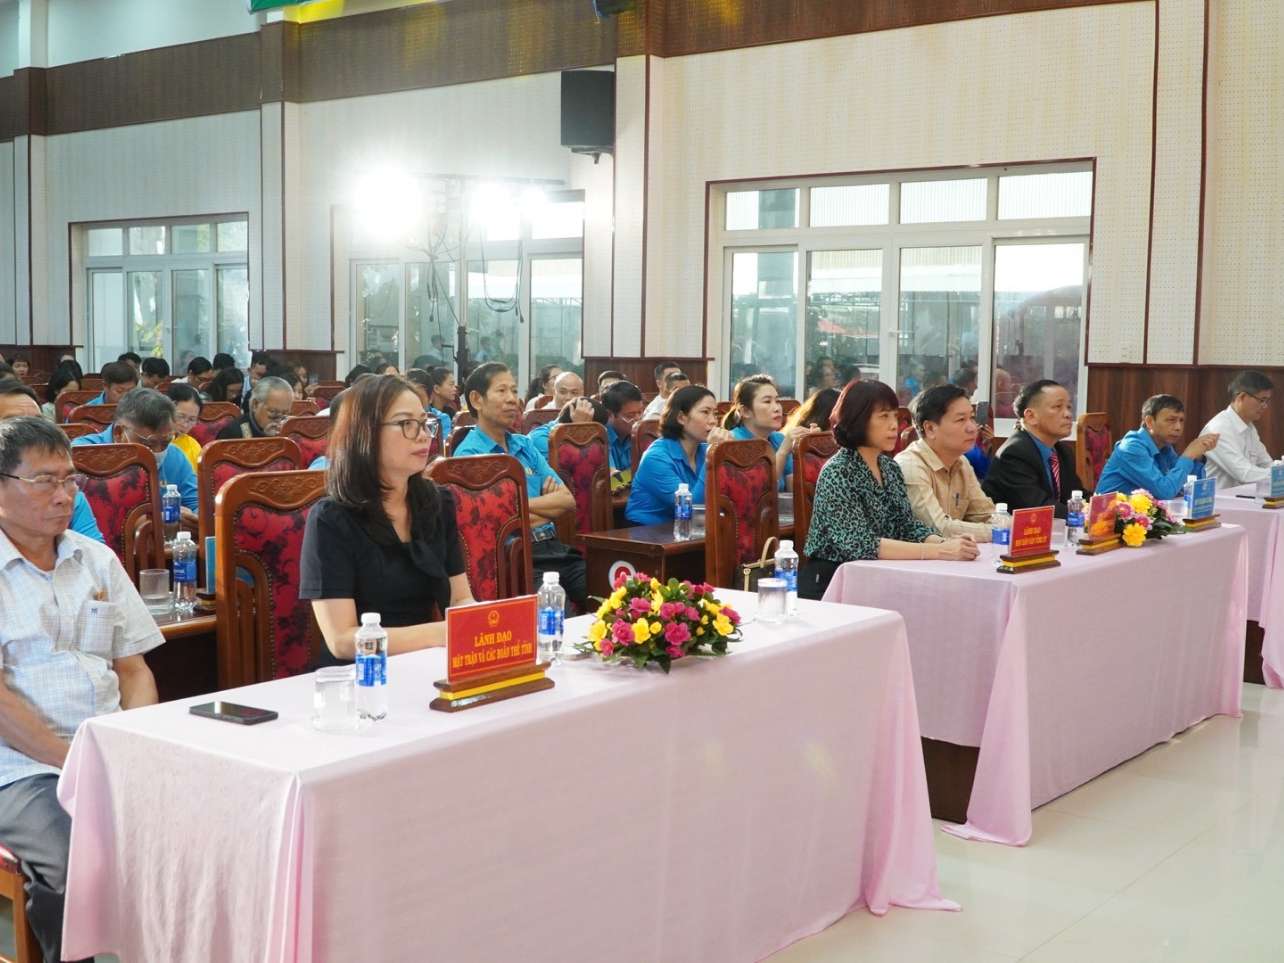 Tham dự buổi khai mạc có Chủ tịch Liên đoàn Lao động tỉnh Kon Tum và lãnh đạo một số sở, ban, ngành của tỉnh. Ảnh: Lê Nguyên 